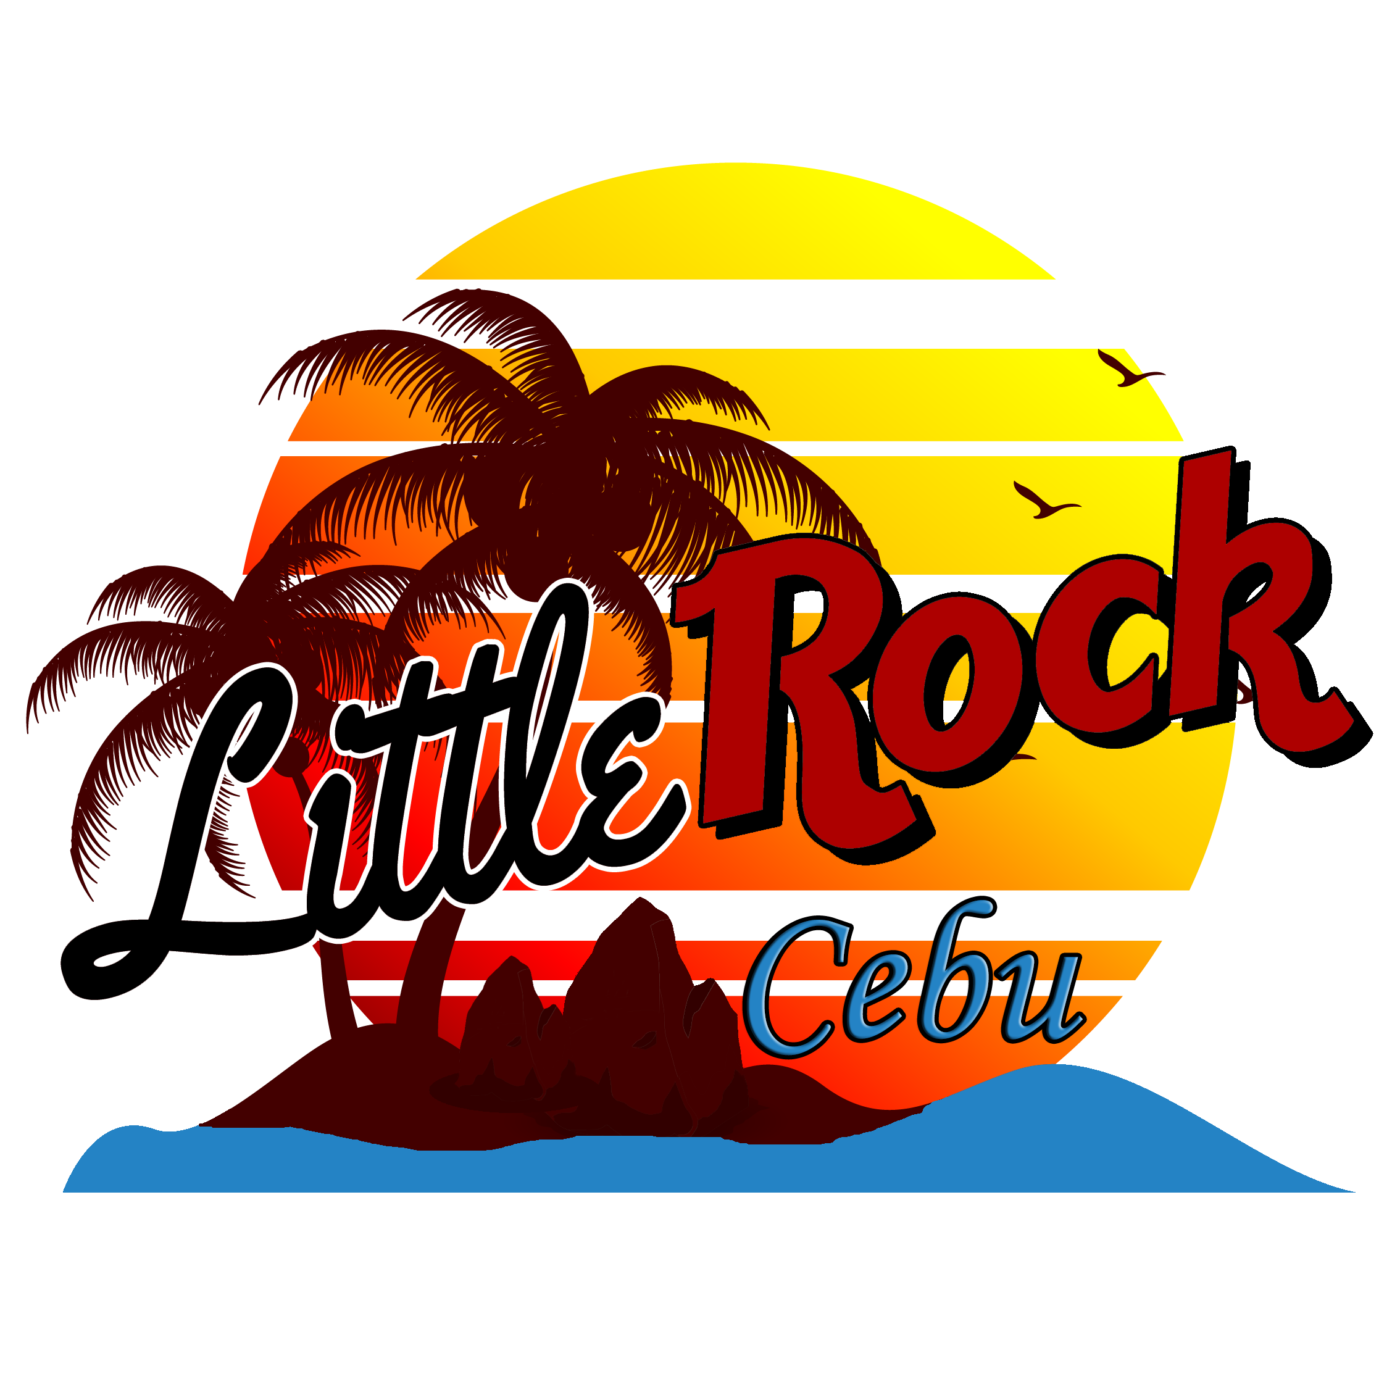 Little Rock Cebu by uicookies.com